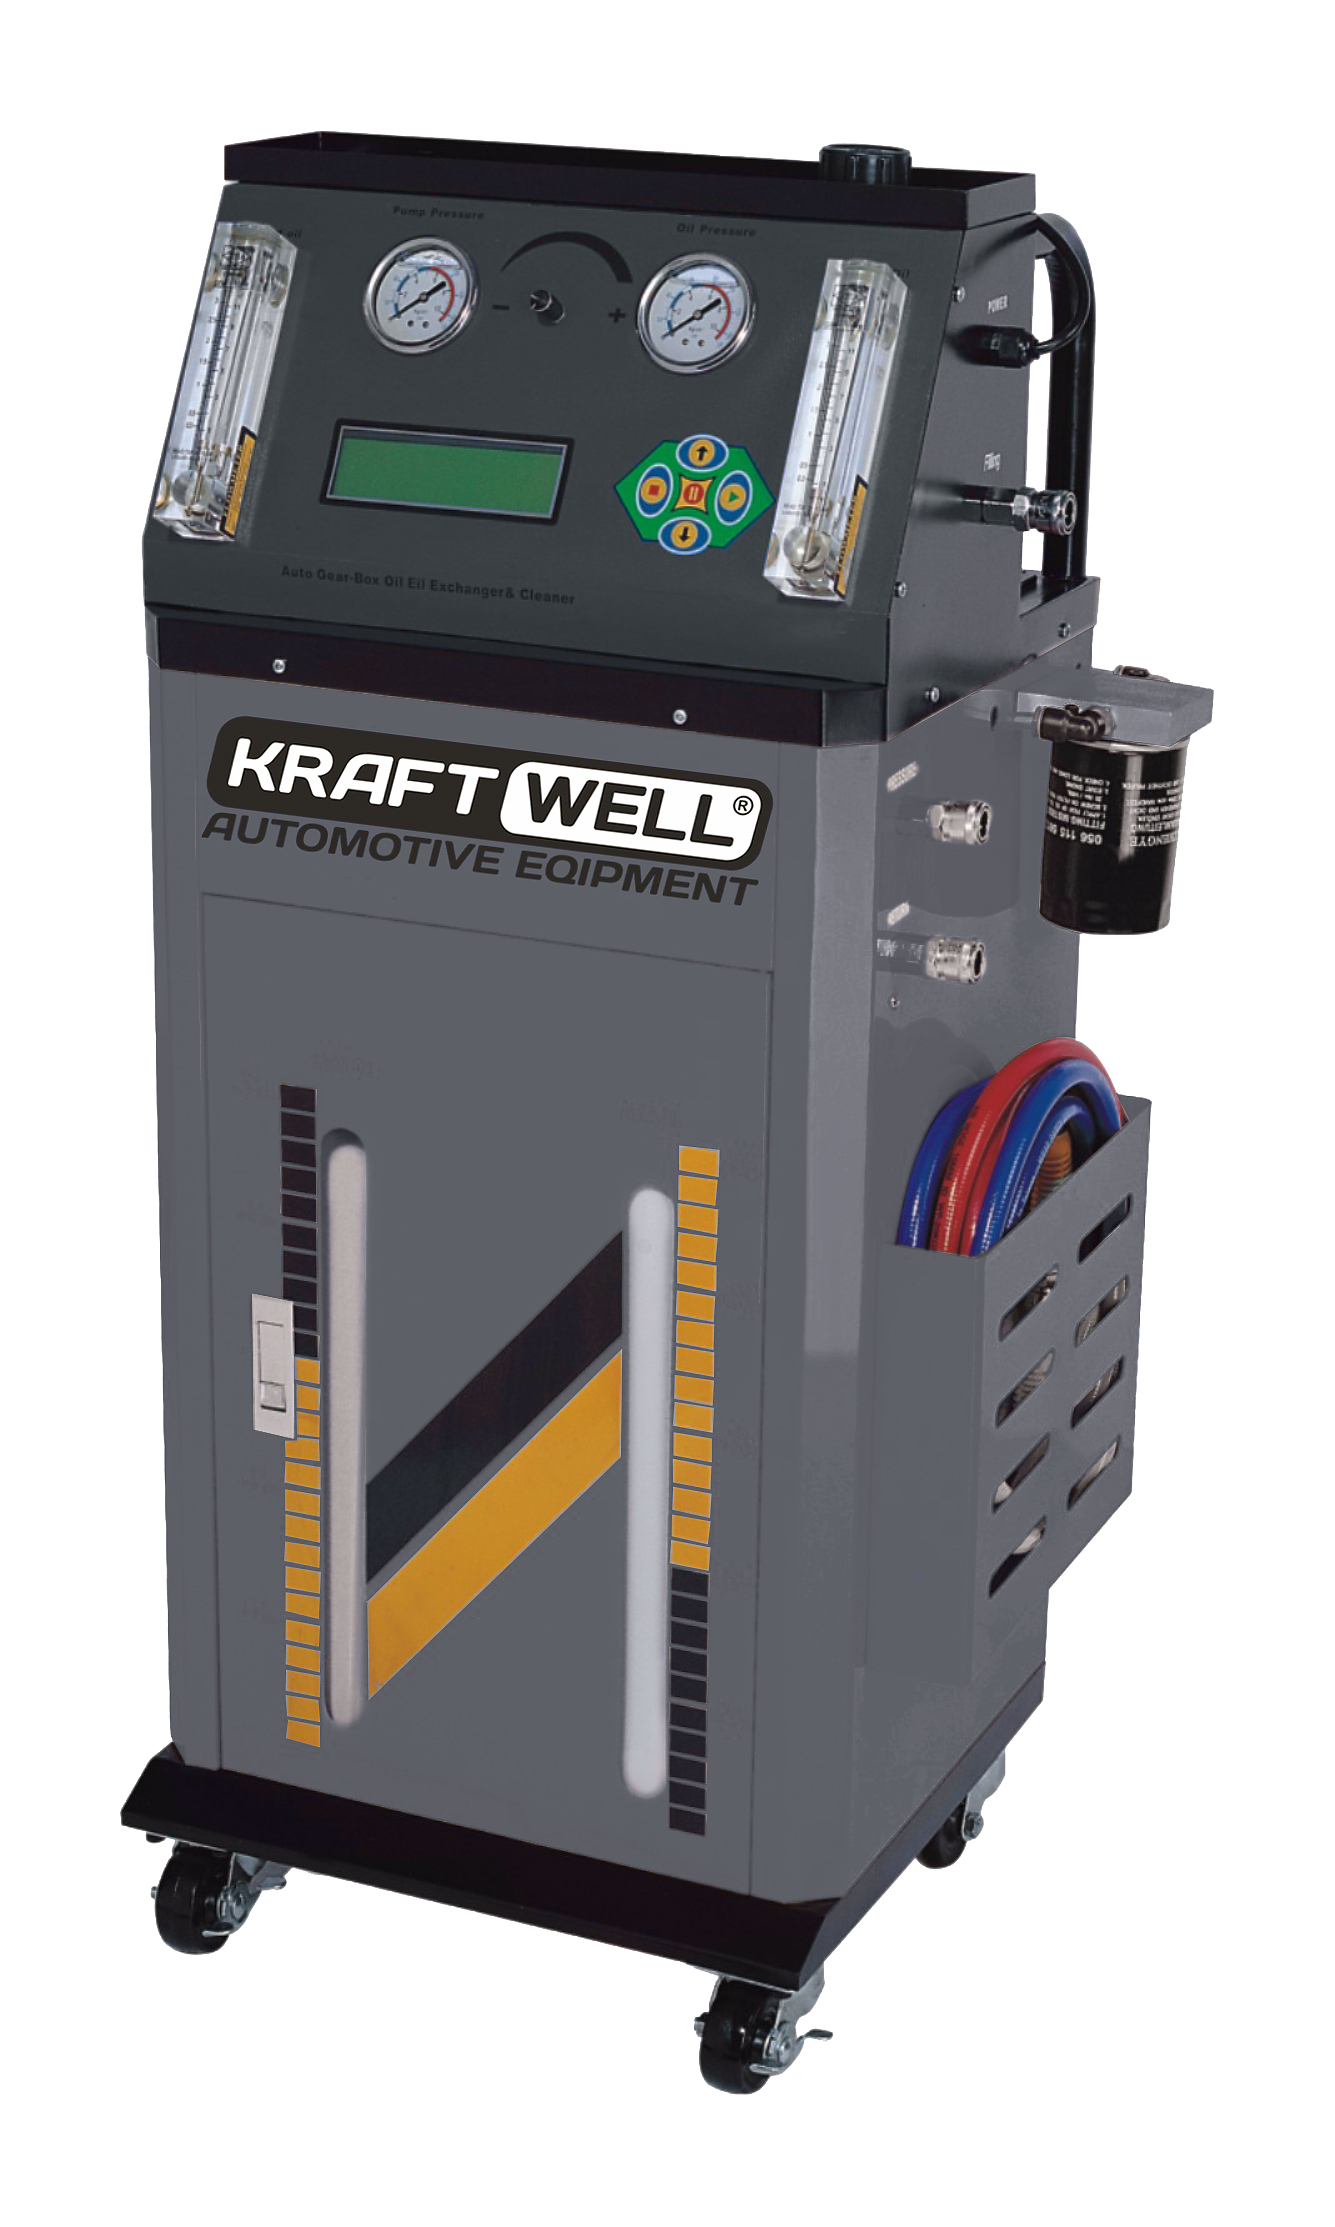 KRW1846LCD Установка для промывки автоматических коробок передач KraftWell